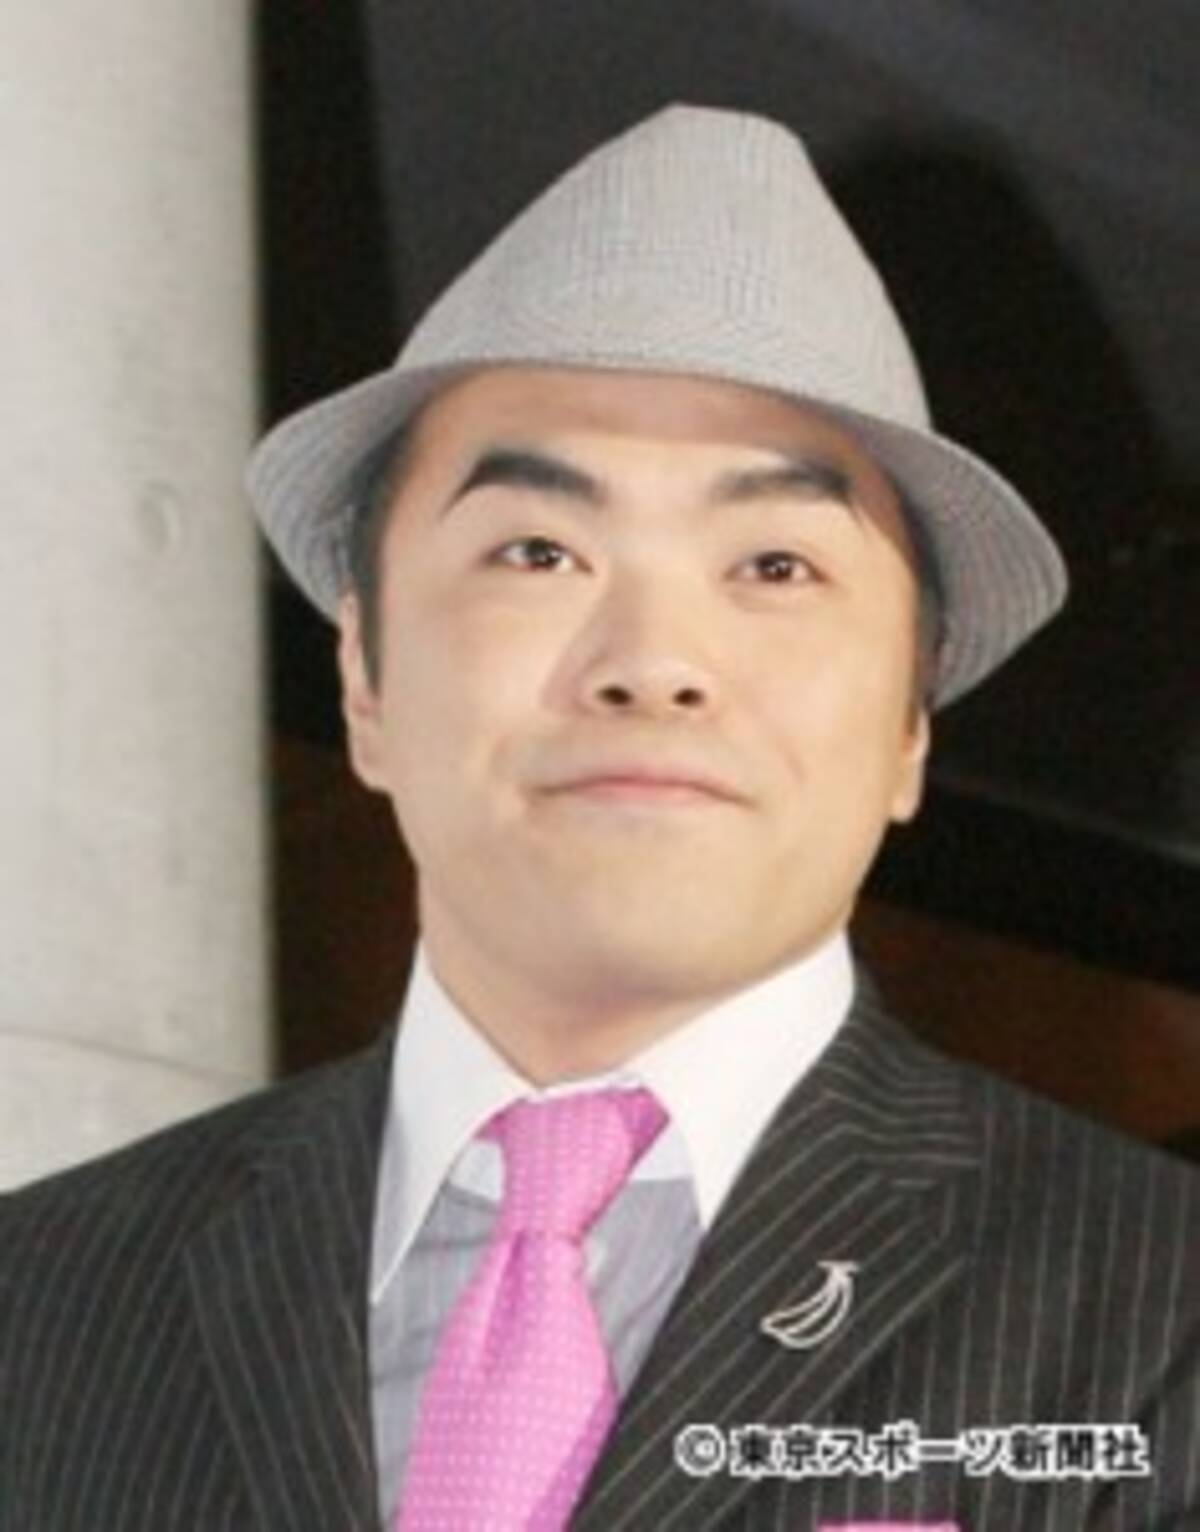 お笑いタレント 前田健さん死去 飲み会でうずくまることがあった 16年4月26日 エキサイトニュース